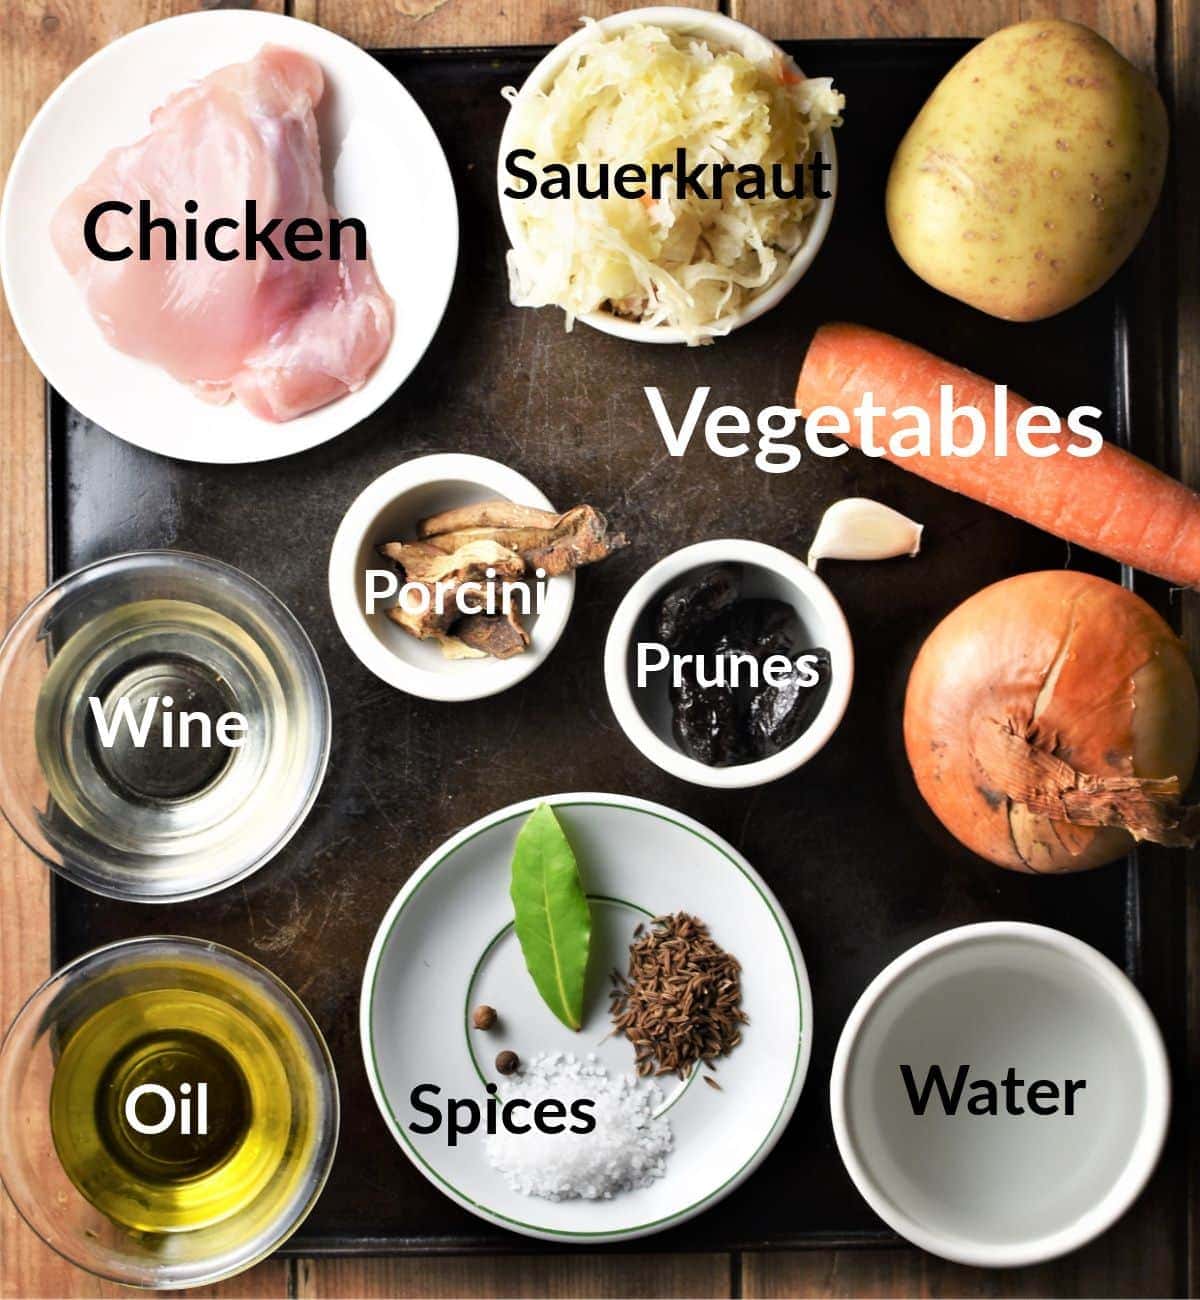 Sauerkraut casserole ingredients in individual dishes.